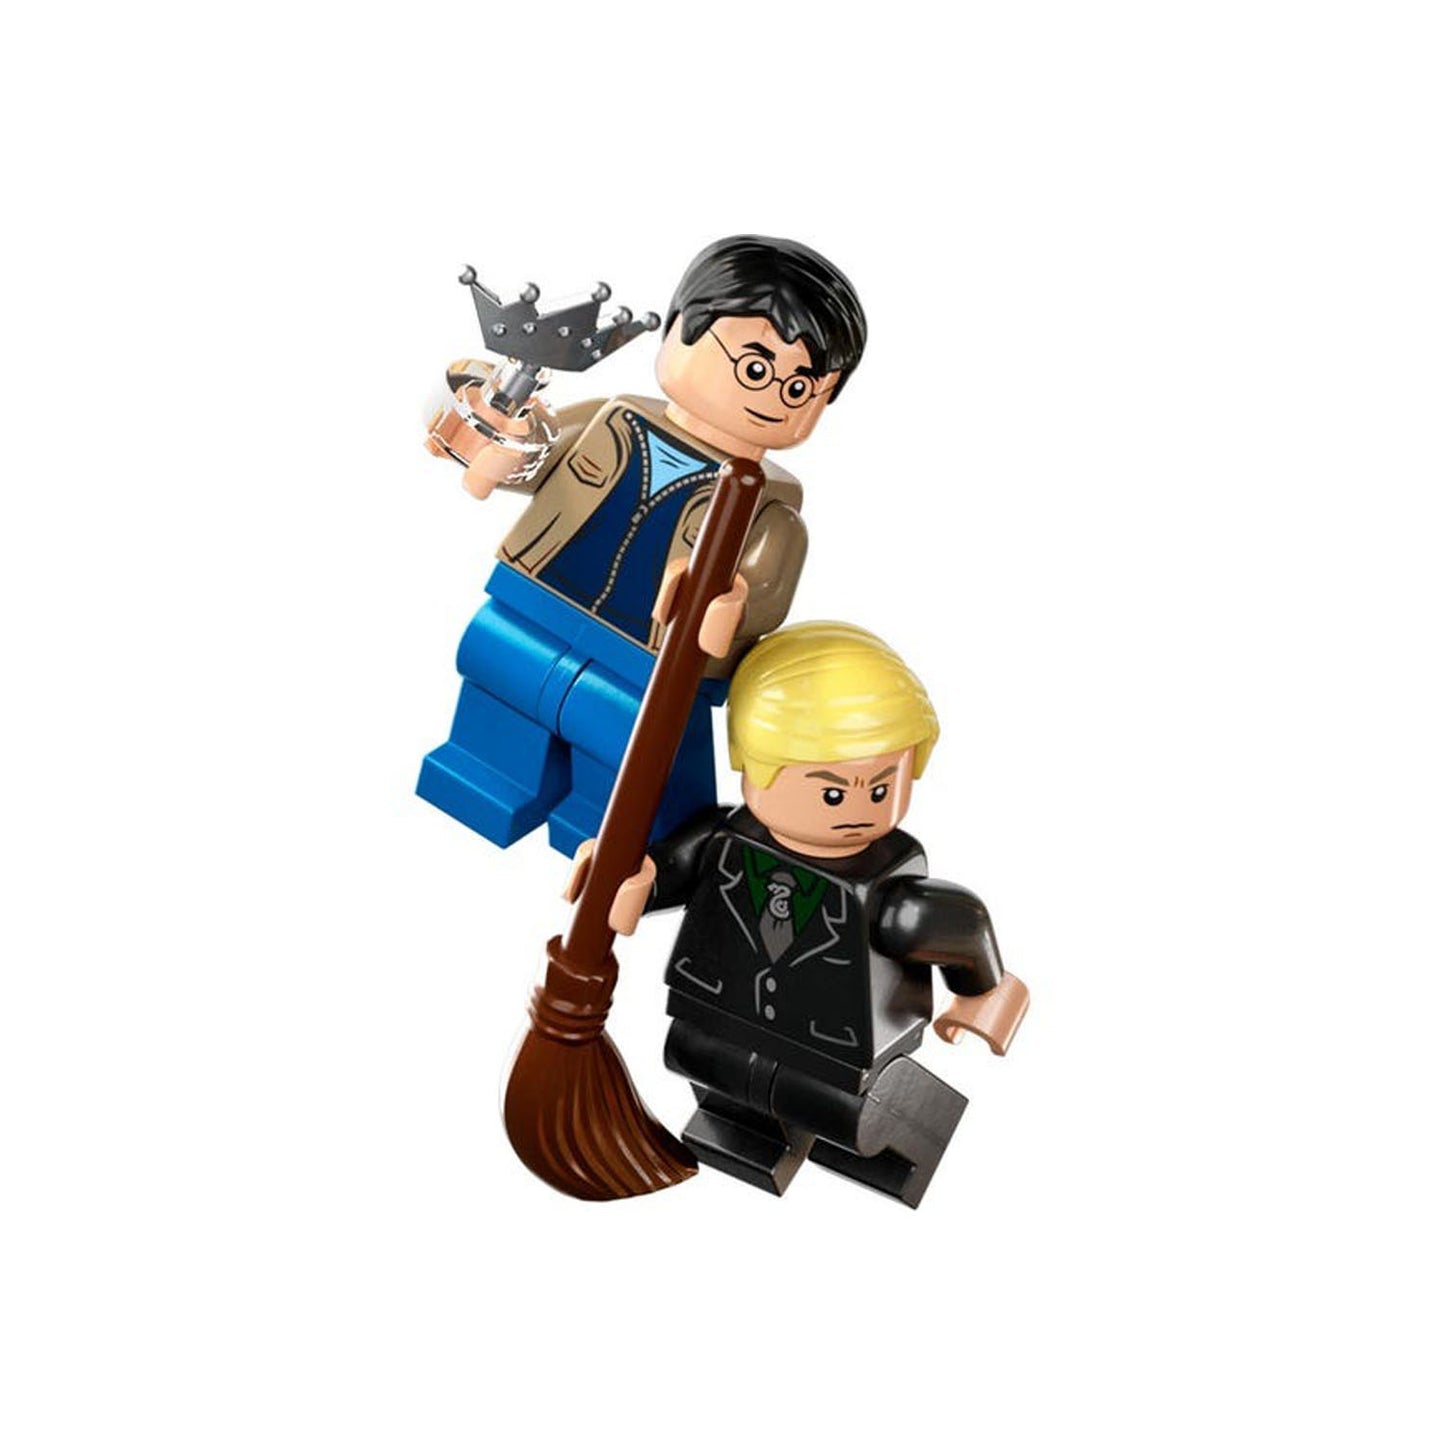 Lego Harry Potter: Hogwarts Sala De Los Requerimientos 76413